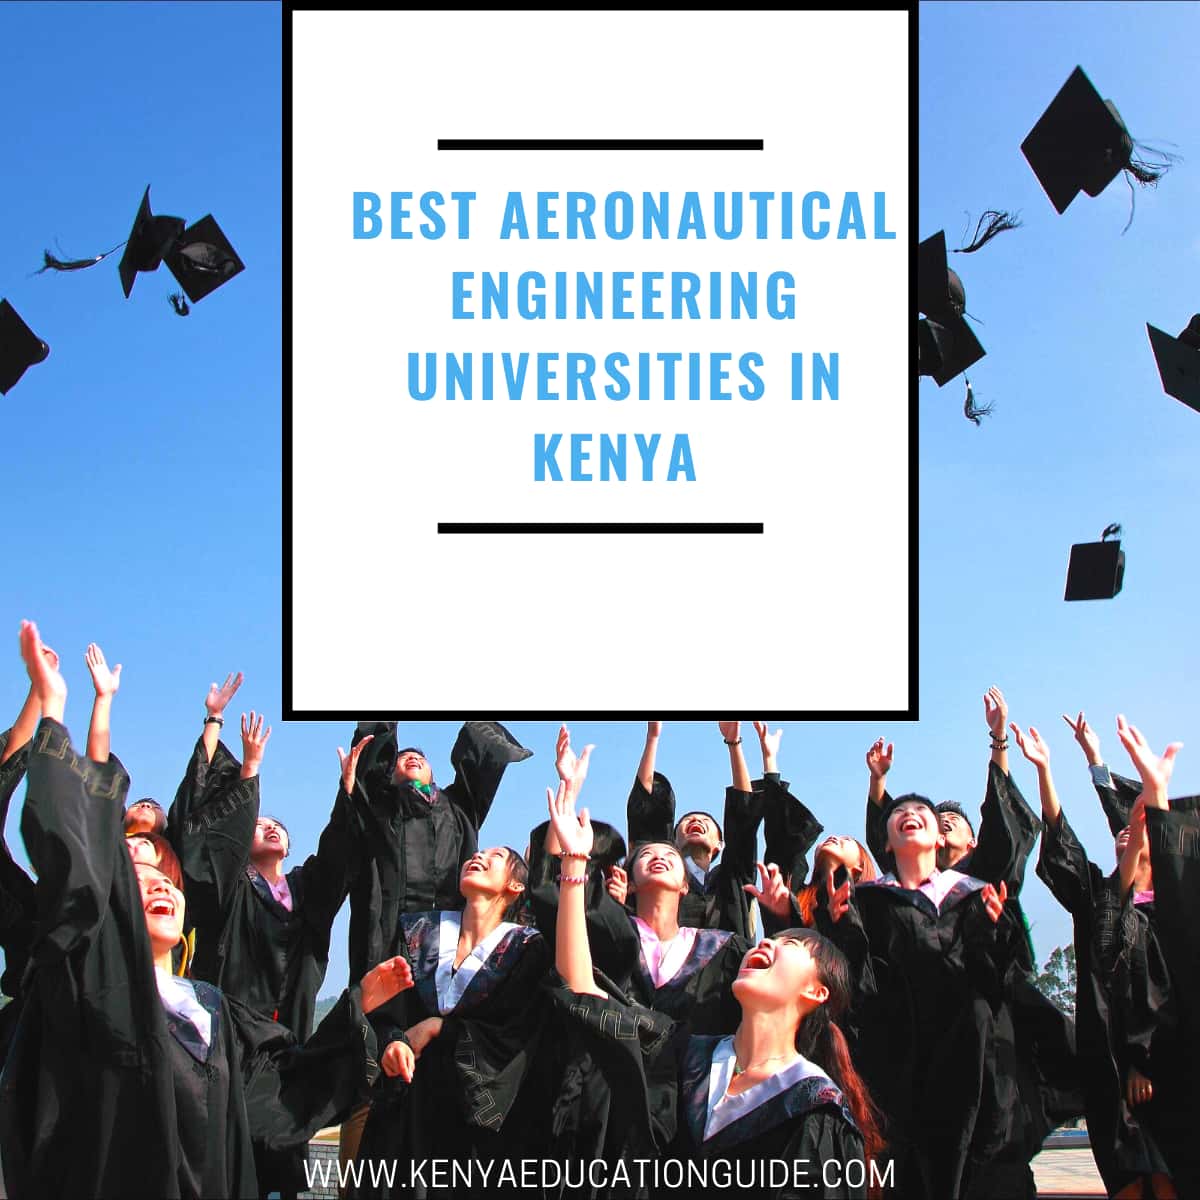 Best aeronautical engineering universities in Kenya